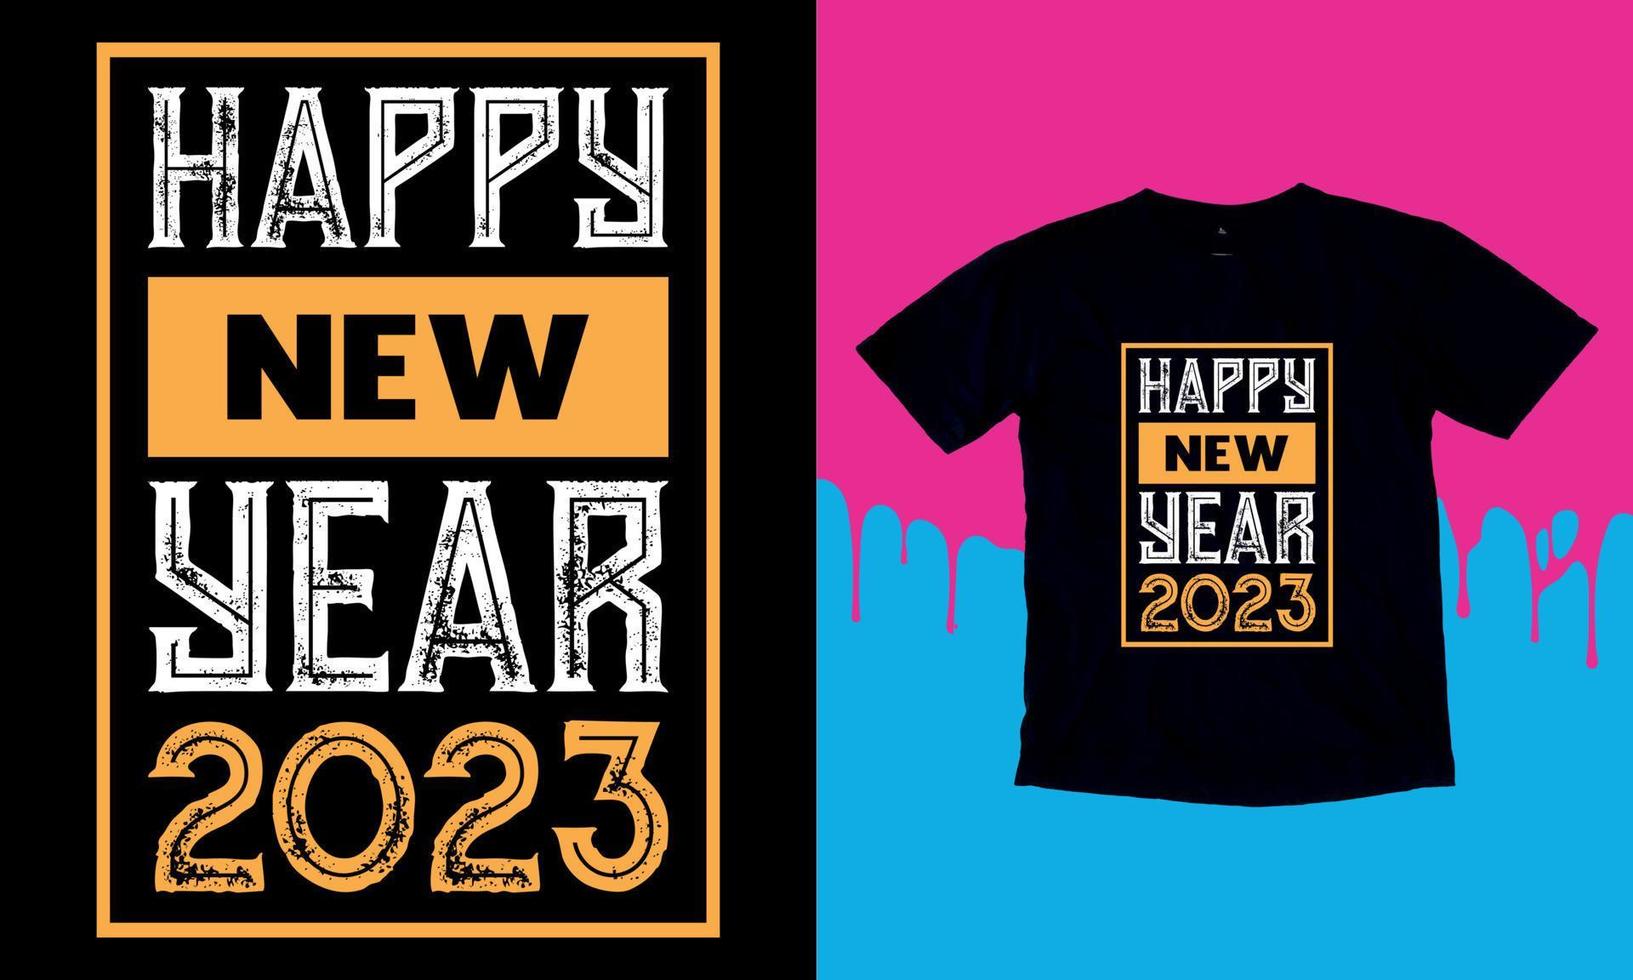 contento nuovo anno 2023, contento nuovo anno t camicia disegno, lettering vettore illustrazione isolato su nero sfondo, nuovo anno adesivi quote, Borsa, tazze, carta, regalo.